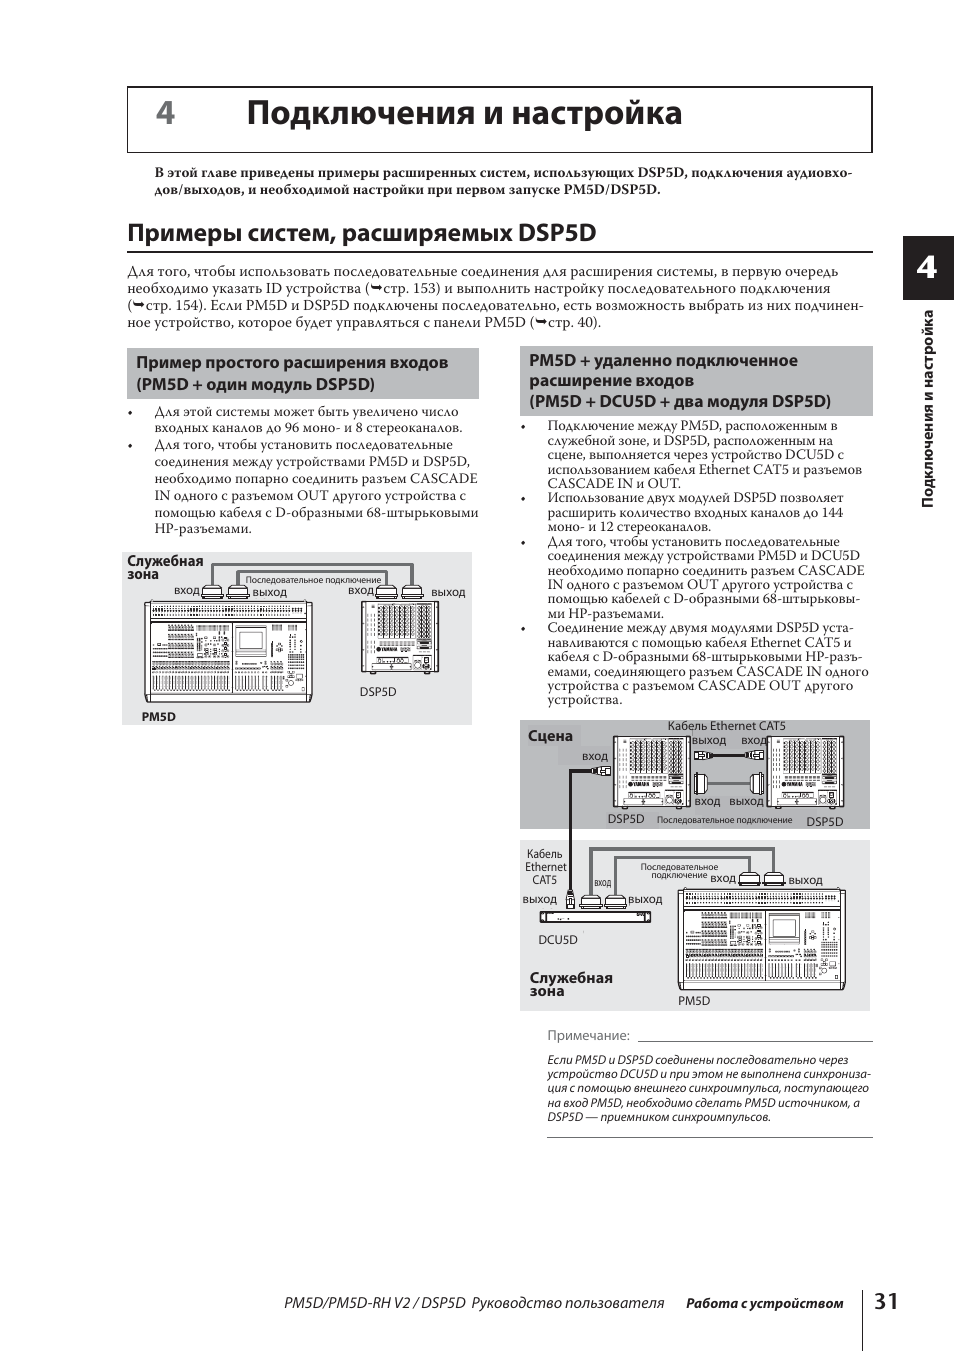 4подключения и настройка, Примеры систем, расширяемых dsp5d, Stage foh | Инструкция по эксплуатации Yamaha DSP5D | Страница 31 / 341